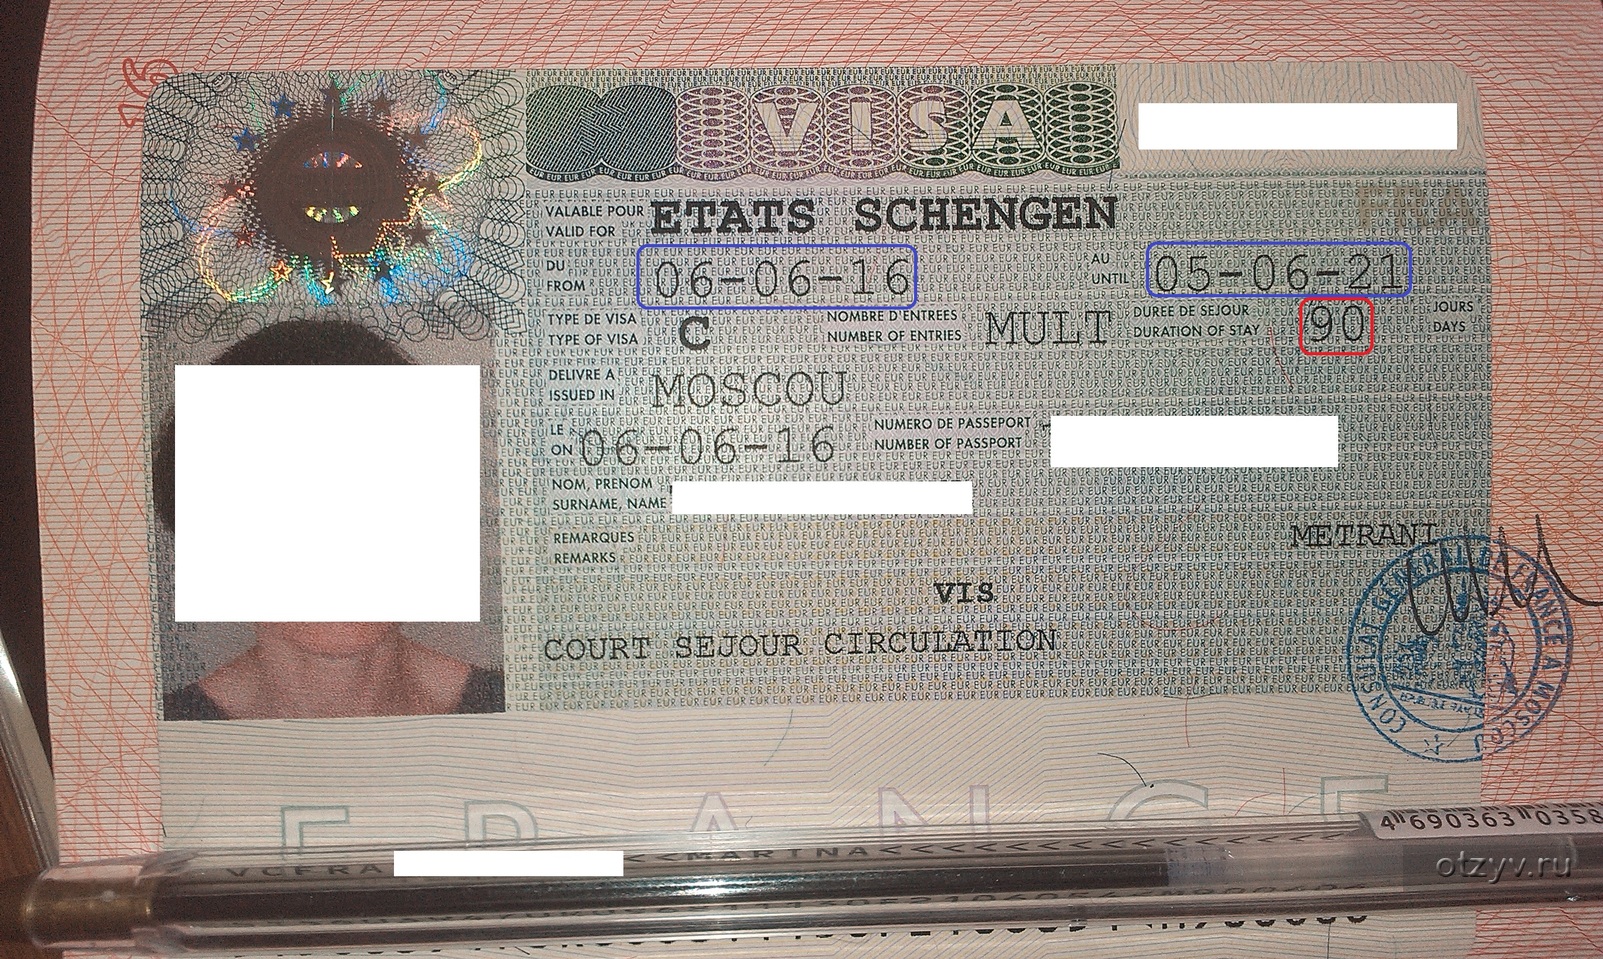 Чем грозит непосещение шенгена, если виза уже на руках?